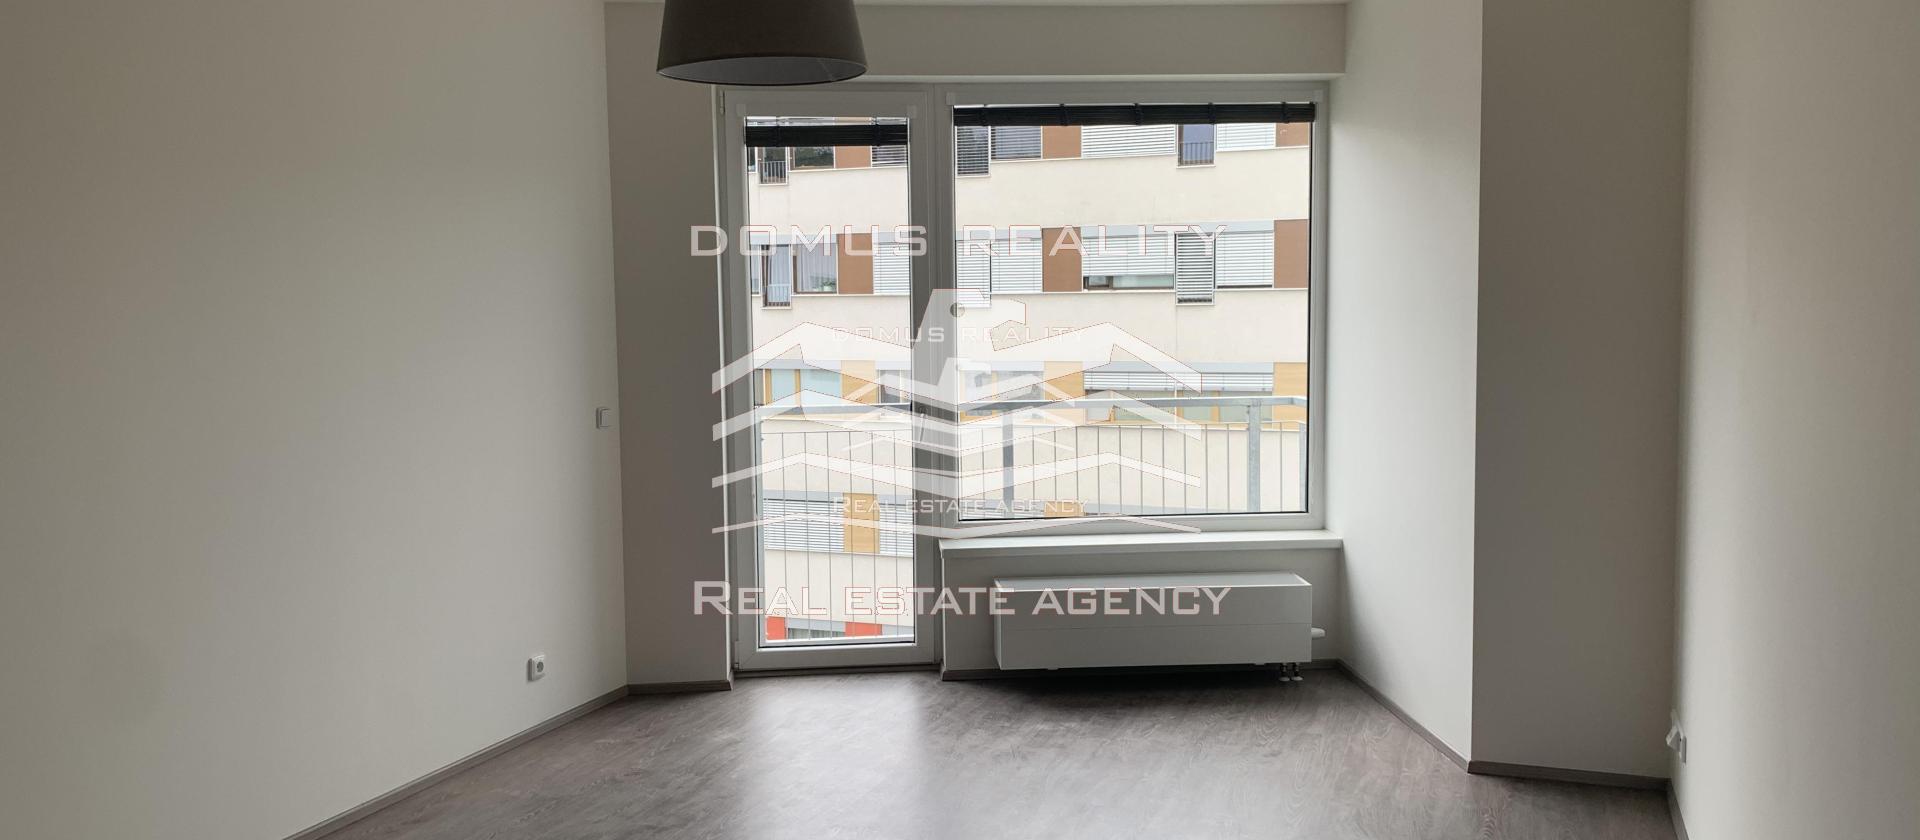 Domus reality nabízí k pronájmu nezařízený byt 2+kk o velikosti 90 m2 s balkonem, garáží a sklepem v ceně. Jedná se o rezidenci v klidné lokalitě Prahy 4